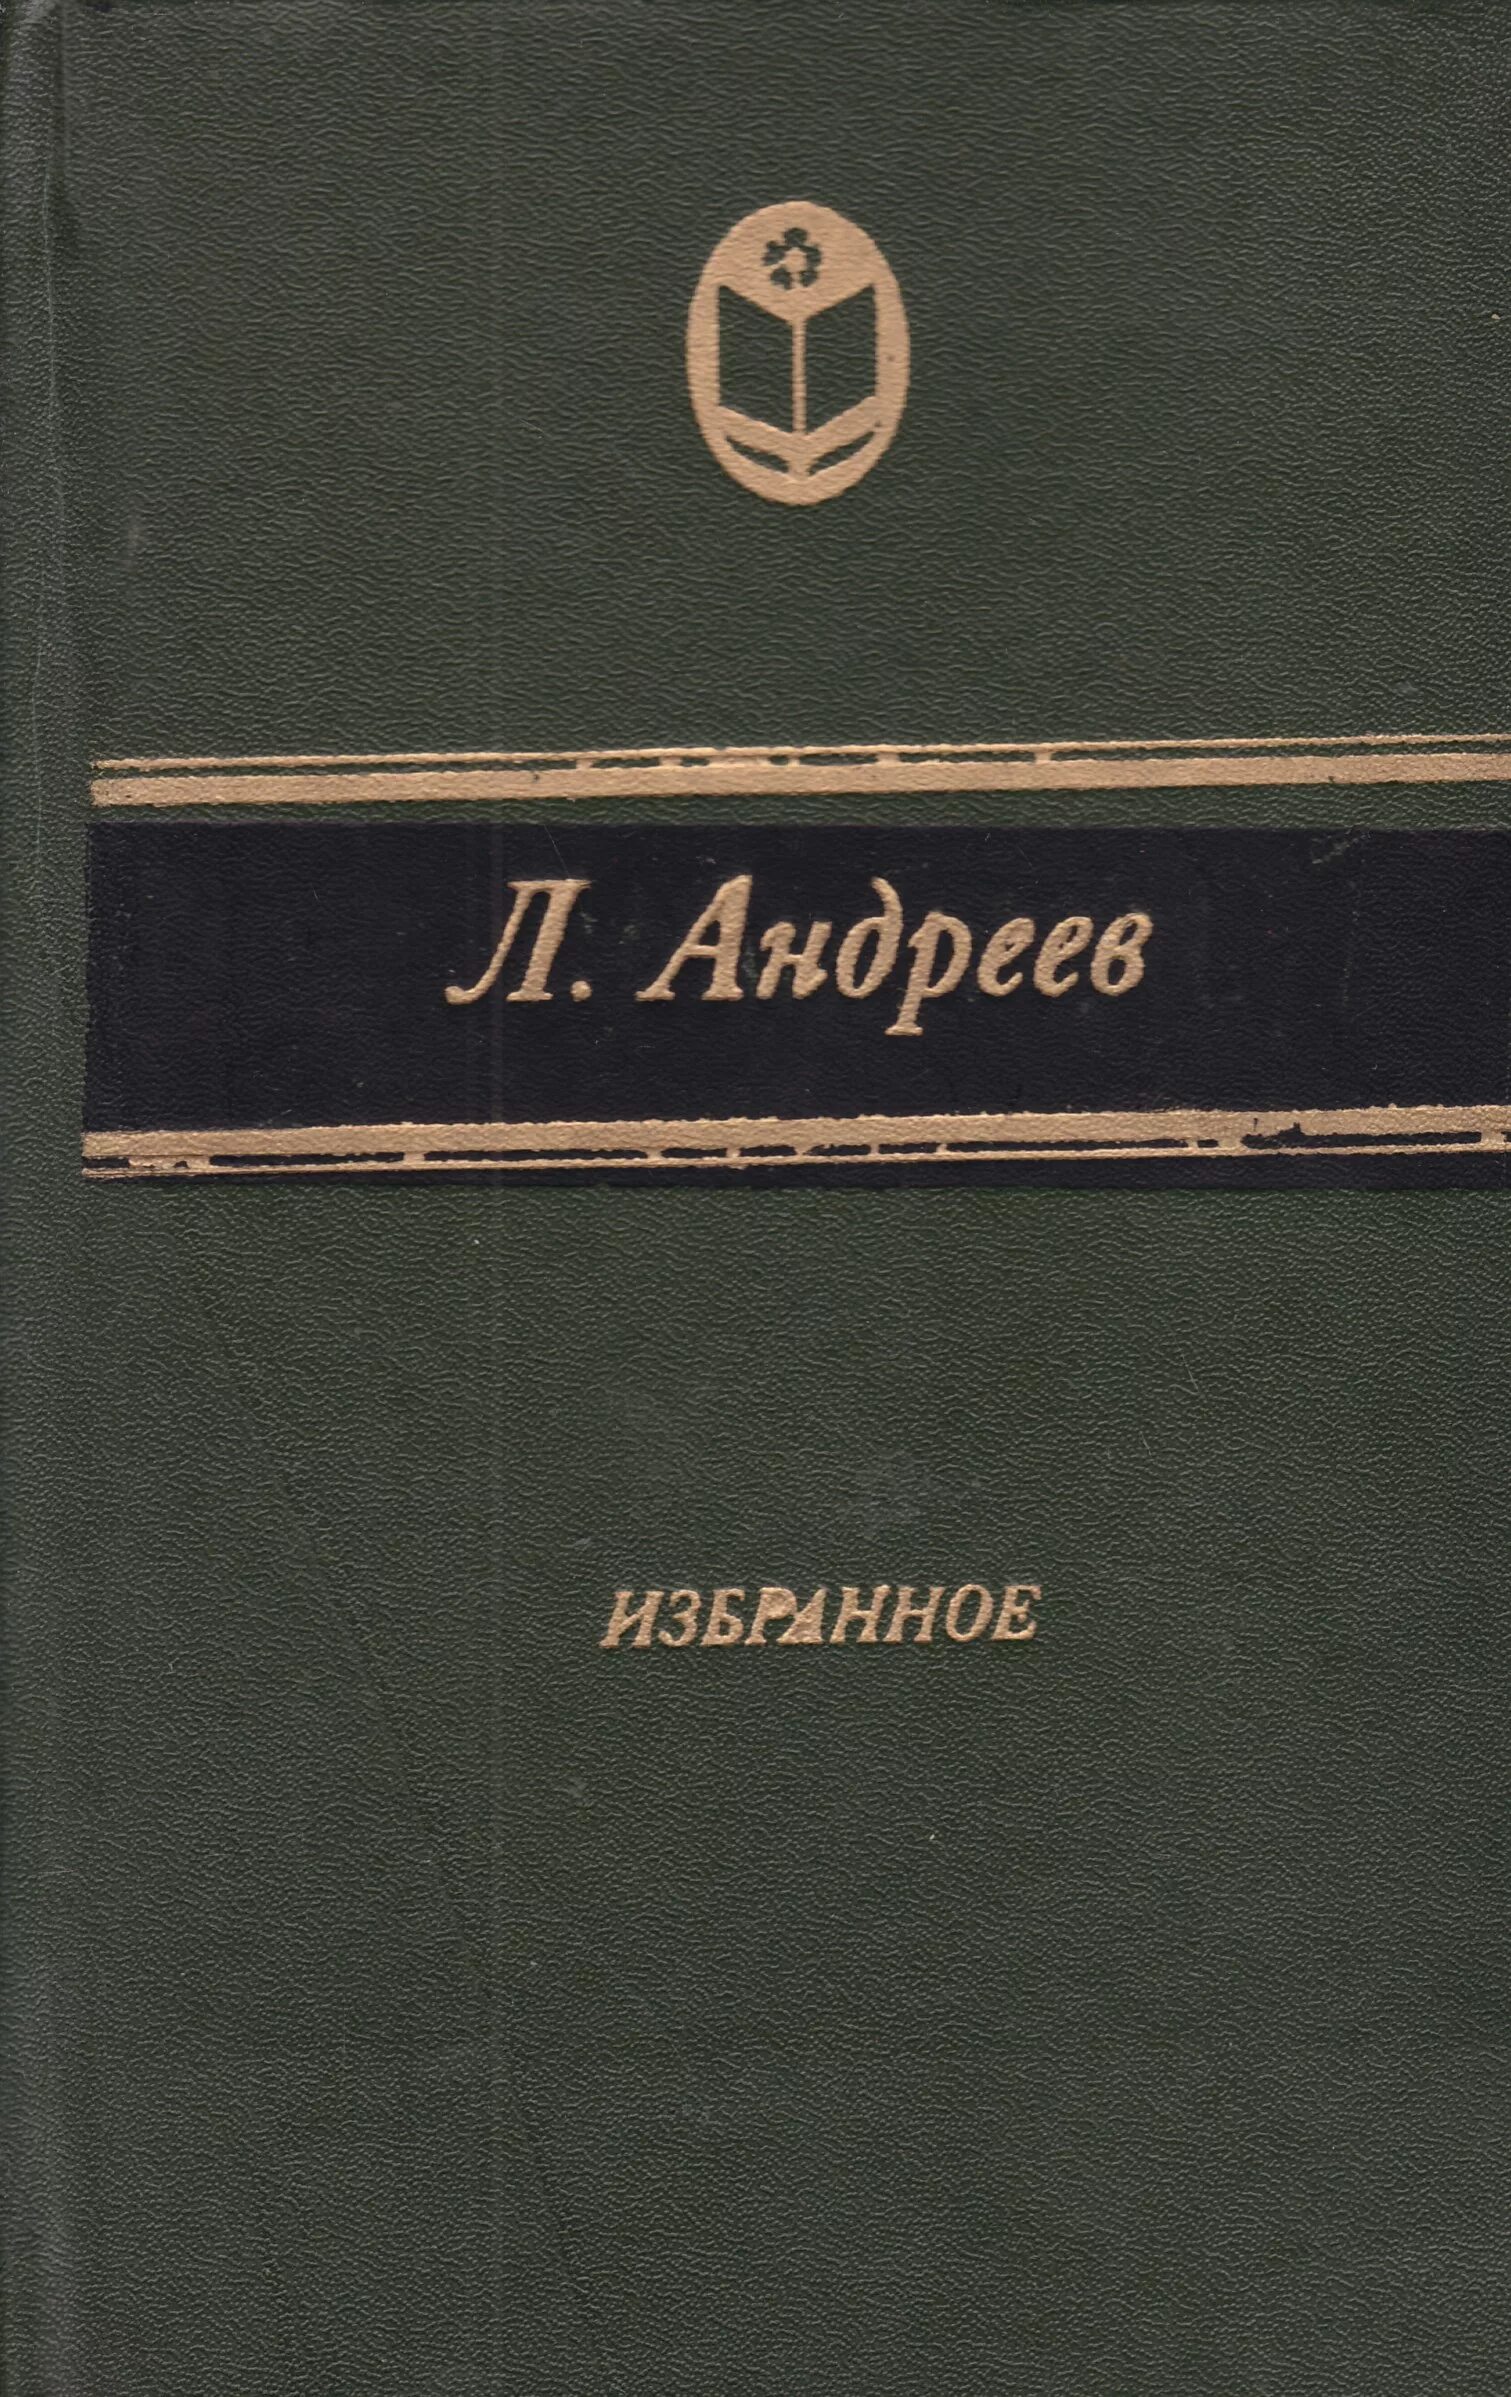 Л.Андреев избранное книга.